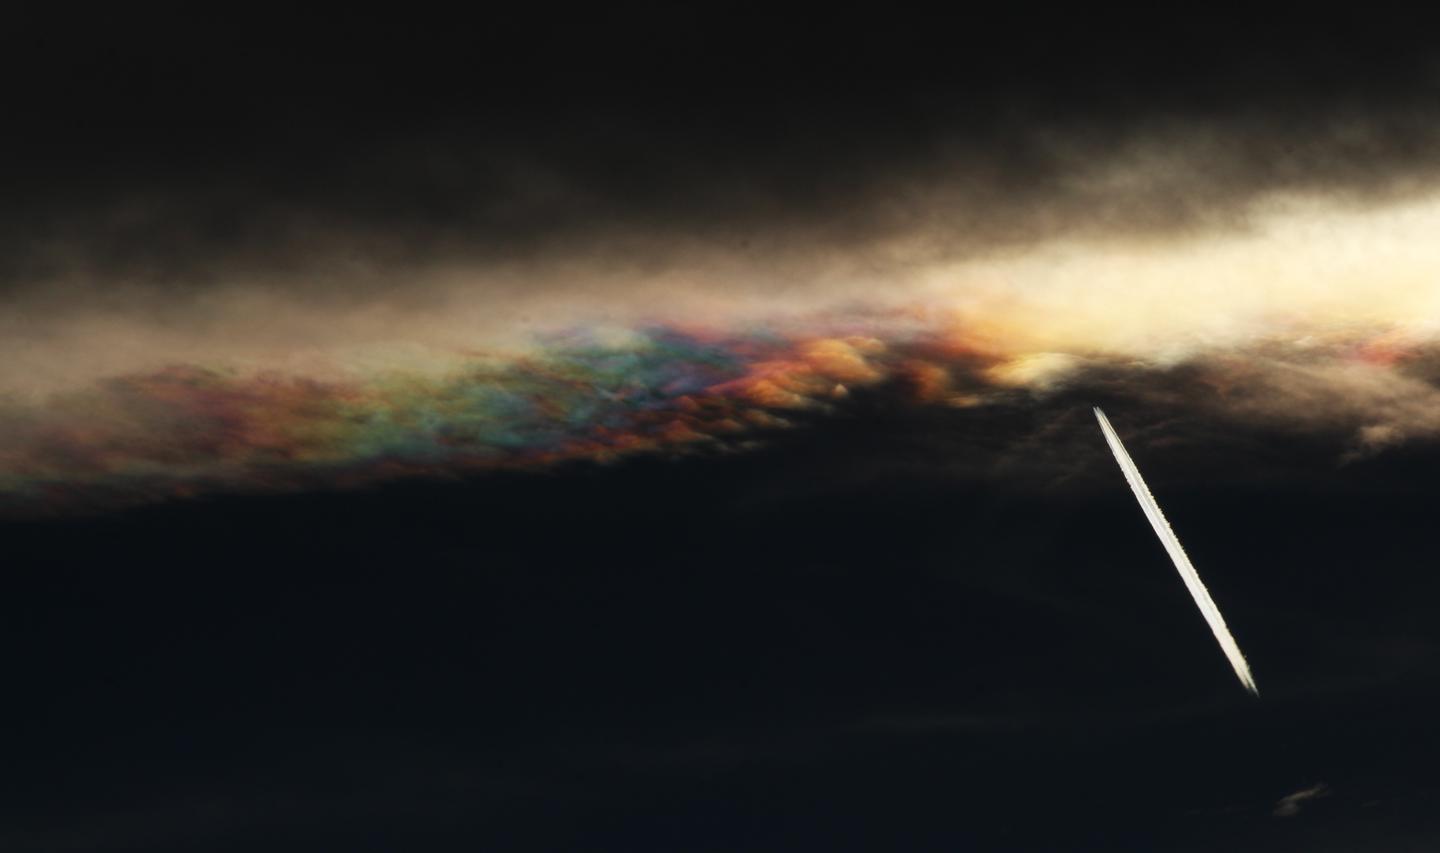  原网址：https://slate.com/technology/2014/10/iridescent-clouds-eclipse-photo-led-something-even-better.html   